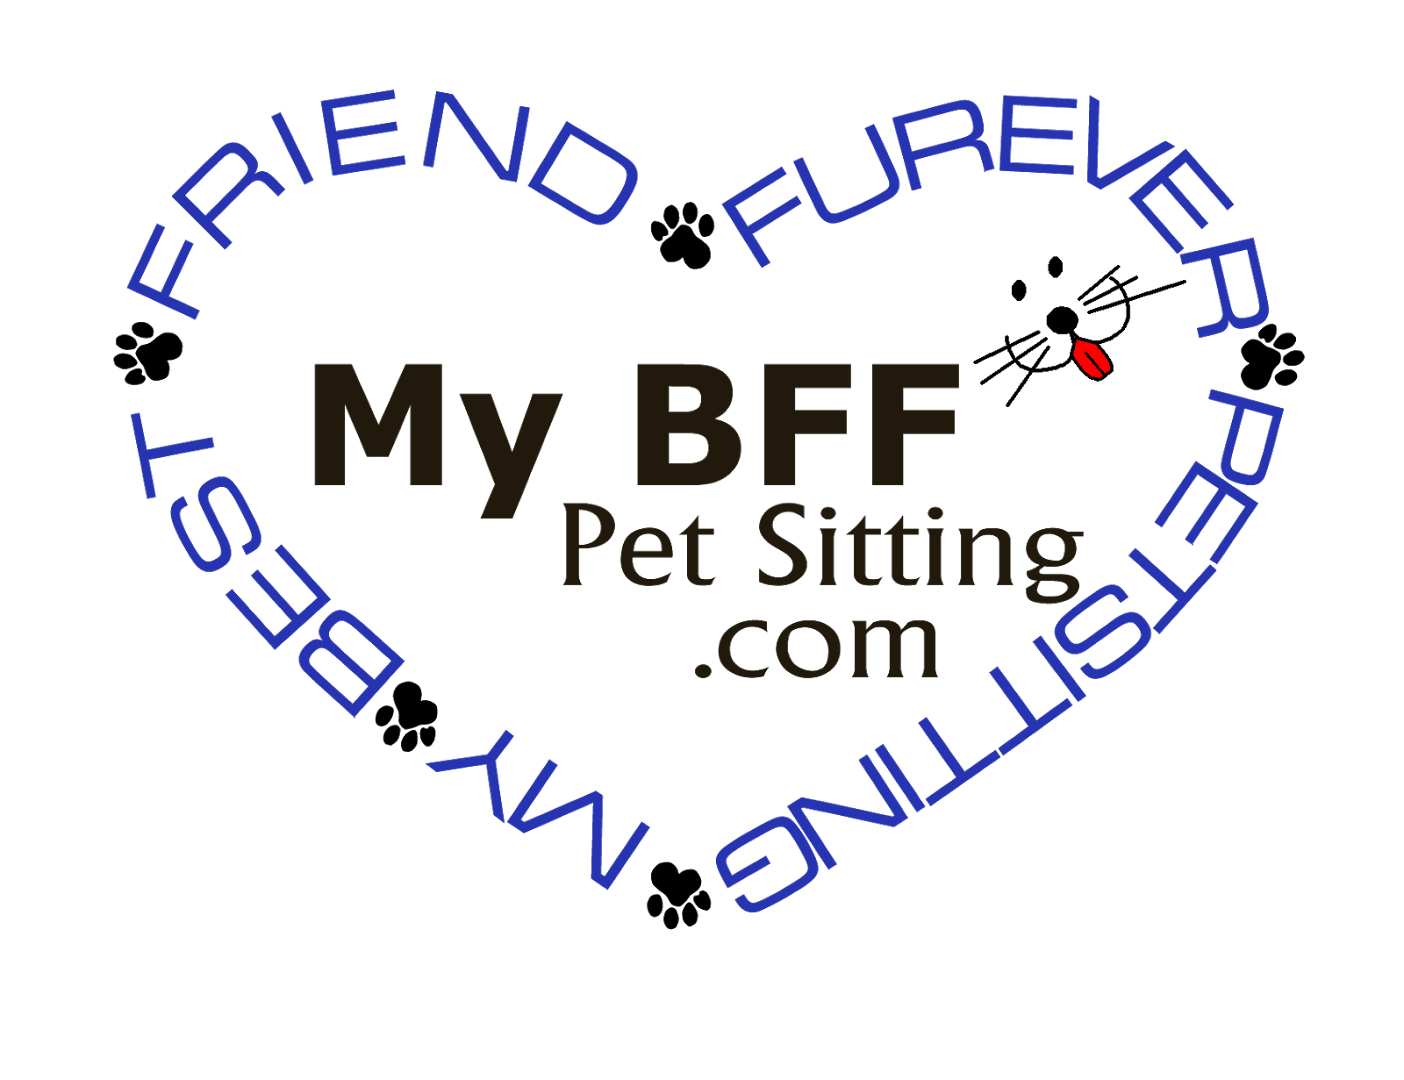 My BFF Pet Sitting, LLC